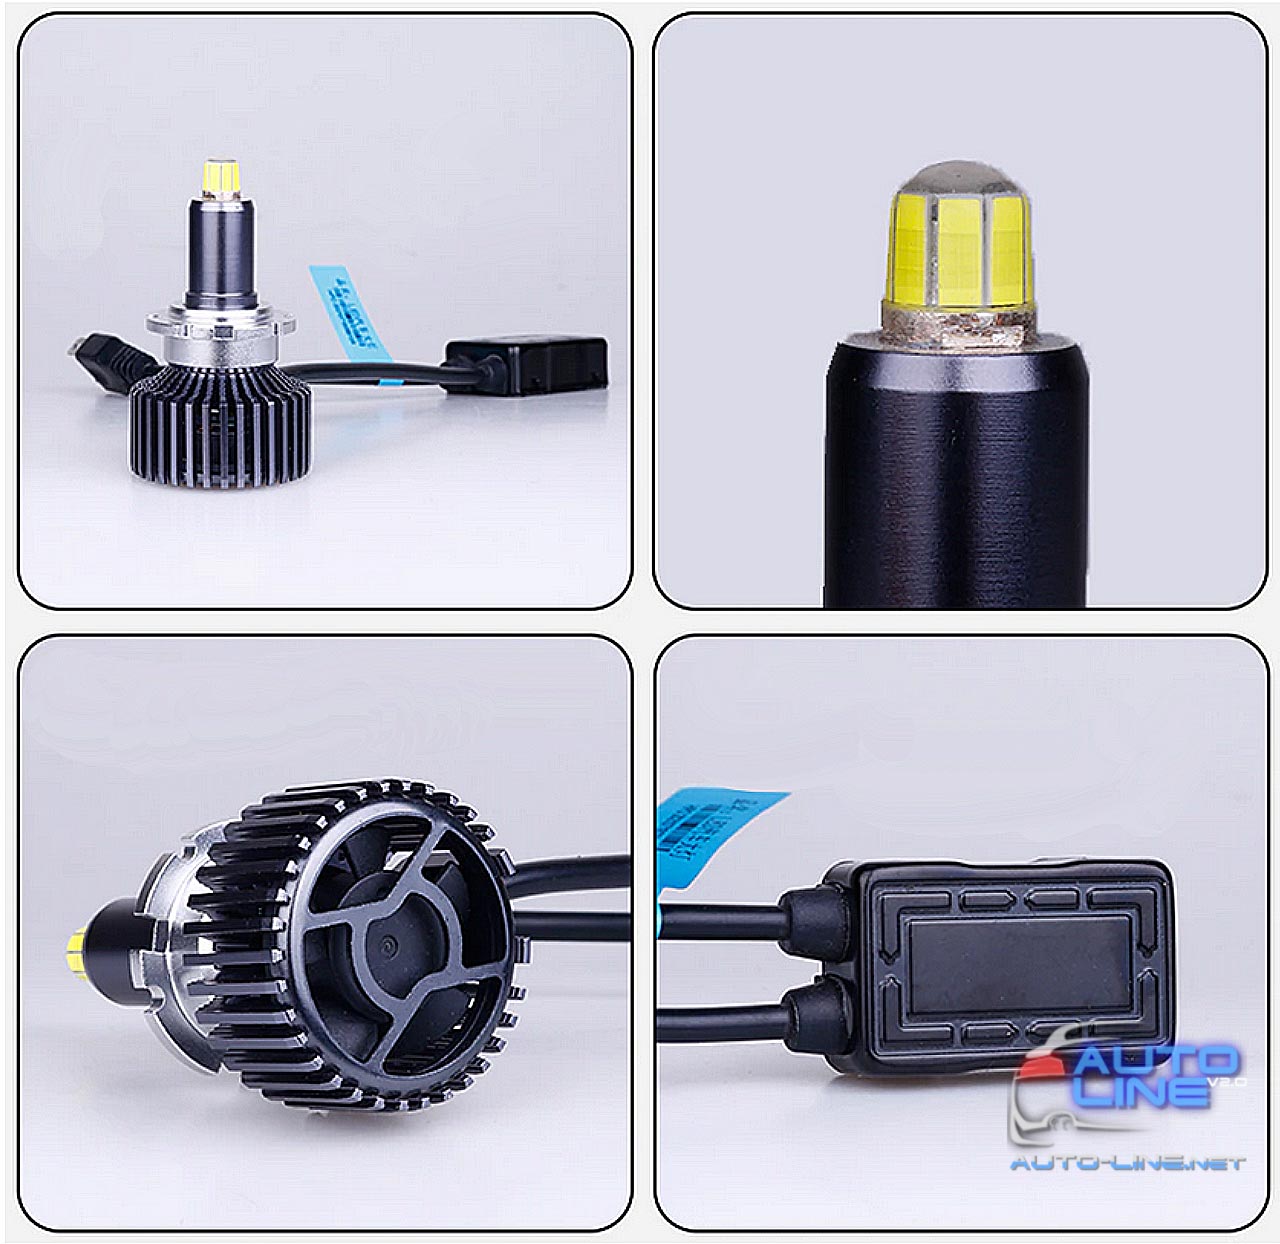 B-Power LED ST D2S 25000Lm — мощные LED-лампы D2S 360 градусов для линз